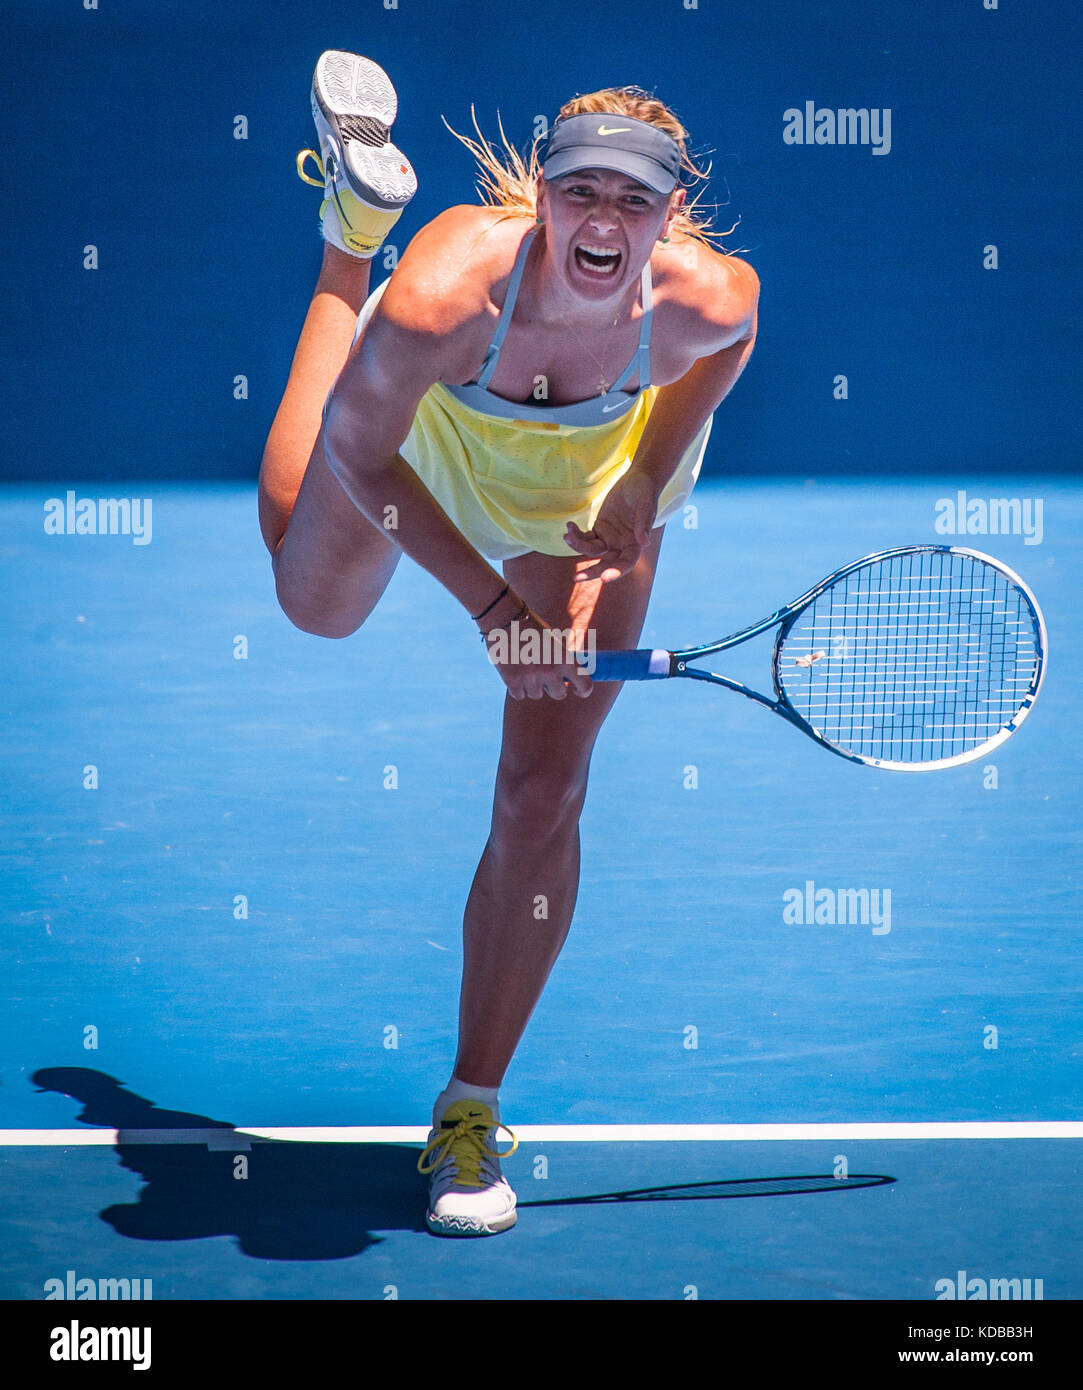 Maria Sharapova plays at the 2013 Australian Open - a Grand Slam ...